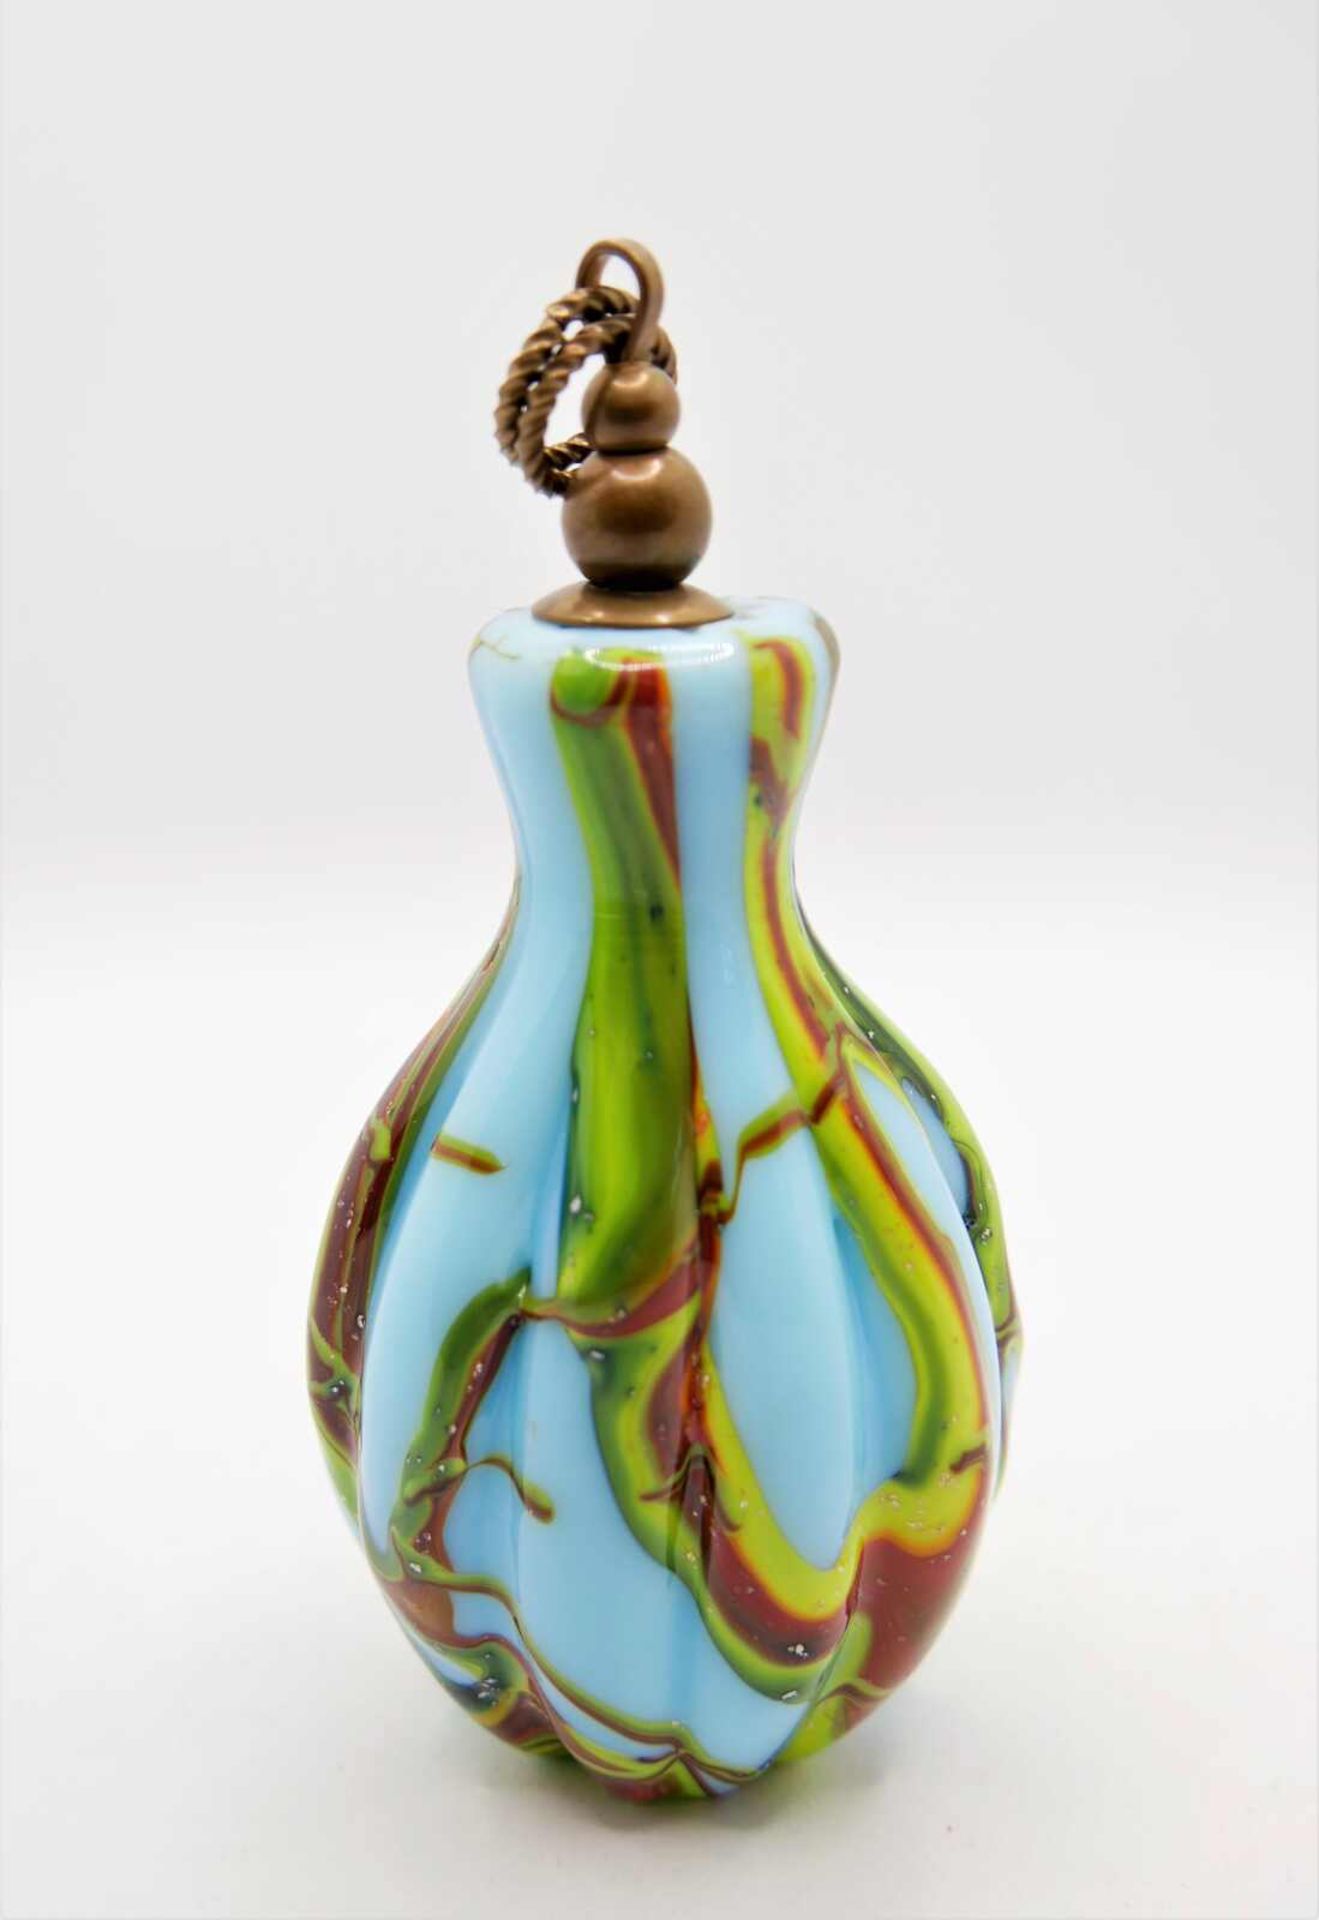 Schnupftabakflasche Glas aus Sammlung, Bixl, blau/grün/gelb/rot, mit Stöpsel. Bayrischer Wald. Höhe - Image 2 of 2